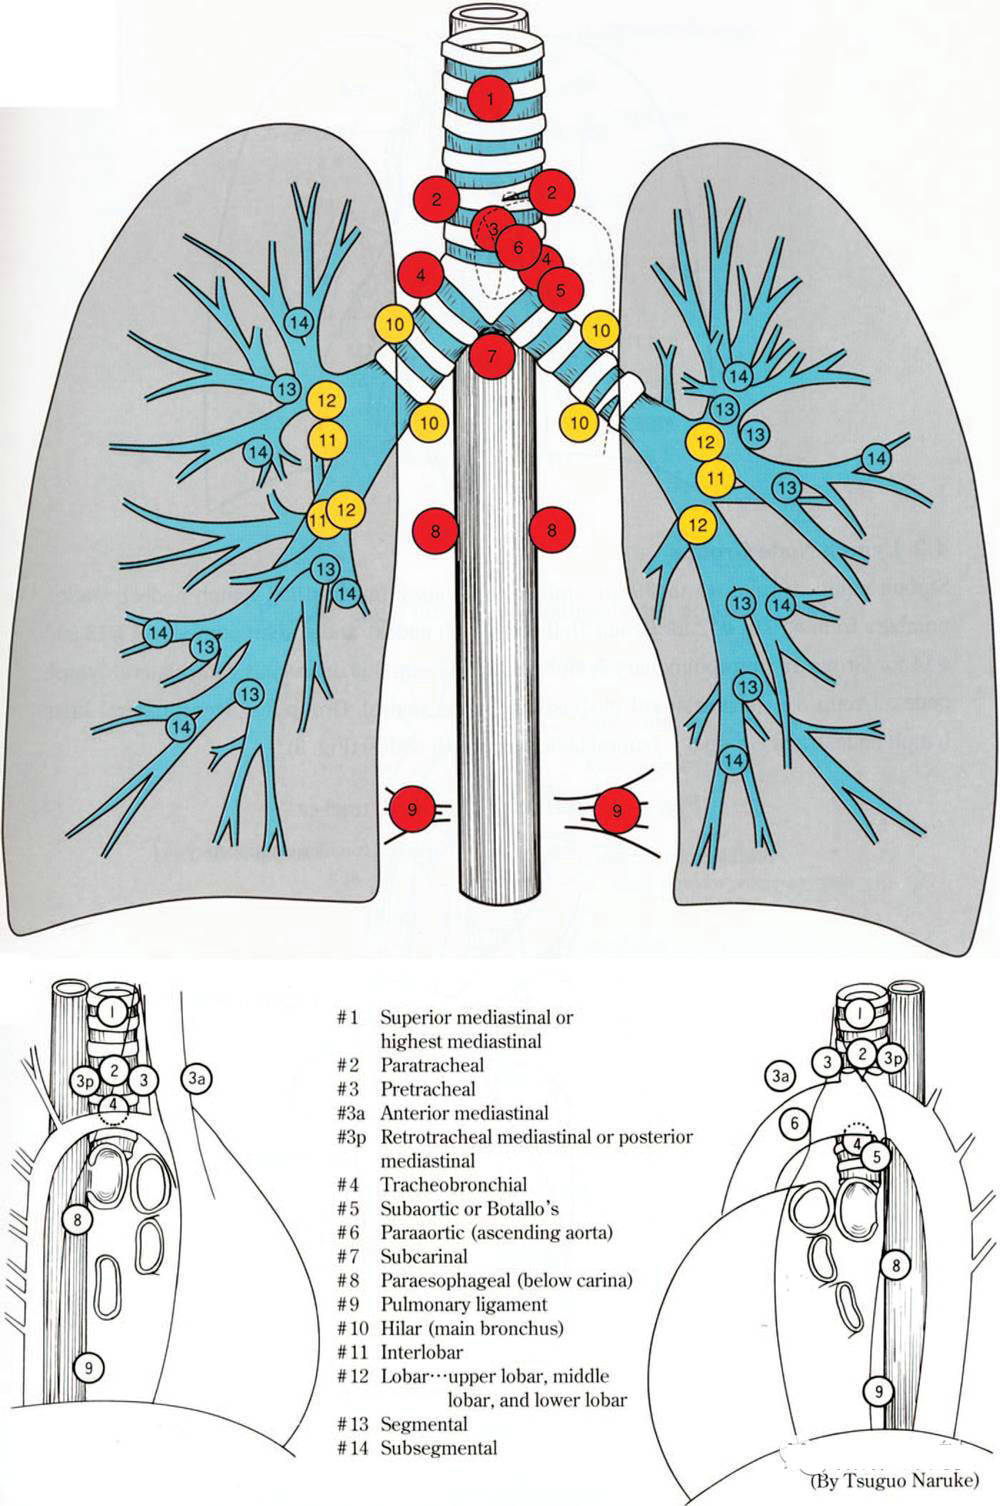 肺淋巴结分区示意图图片